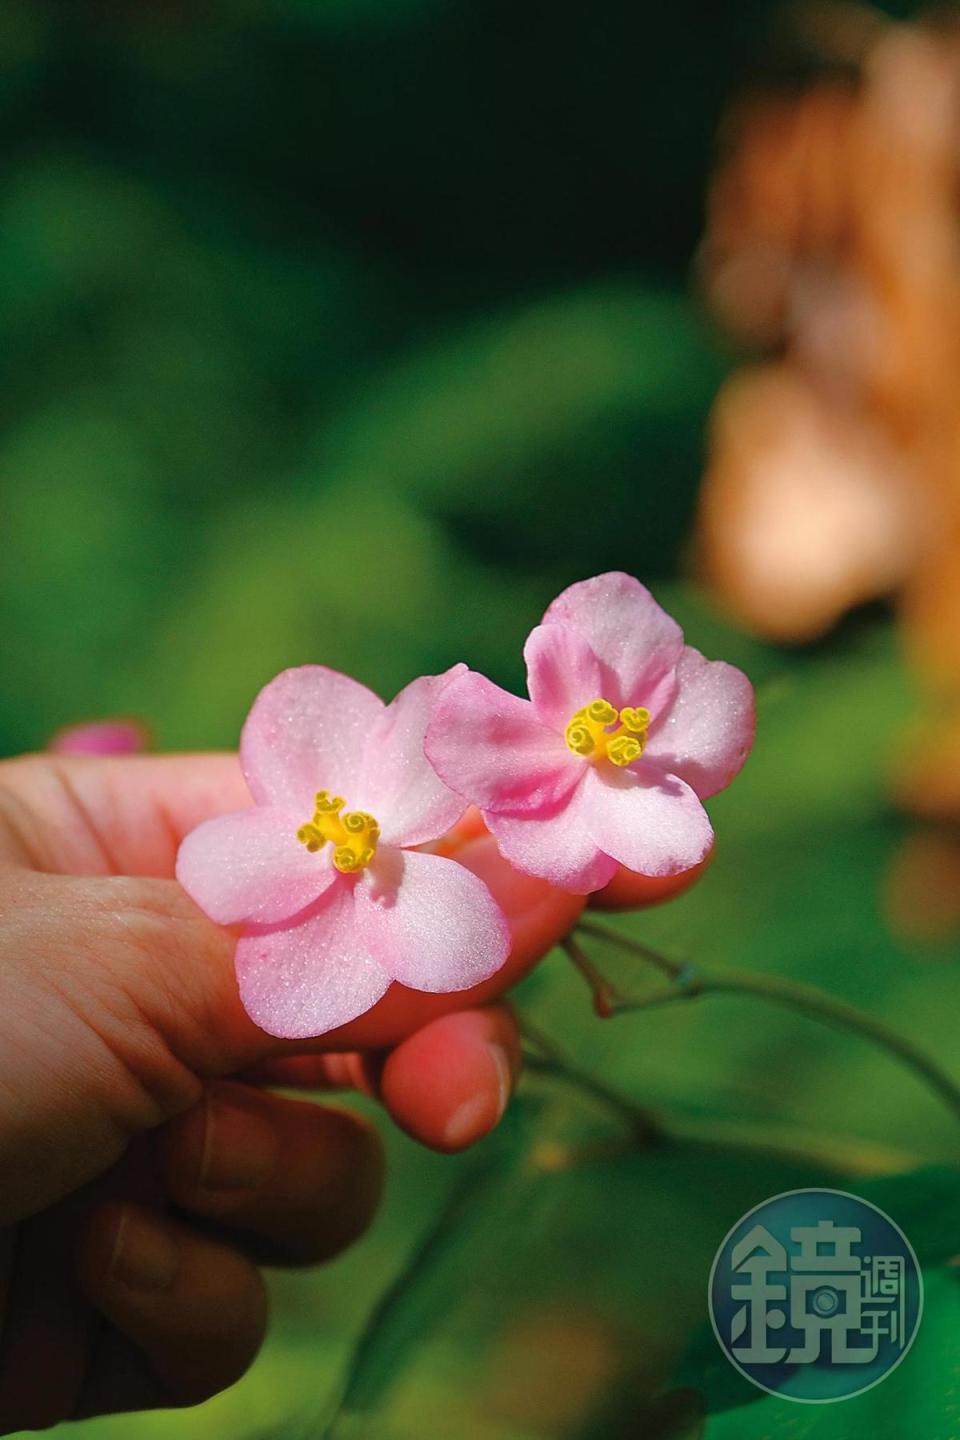 步道的生態豐富，慢下腳步就能發現許多美麗植物，包括這株水鴨腳秋海棠。